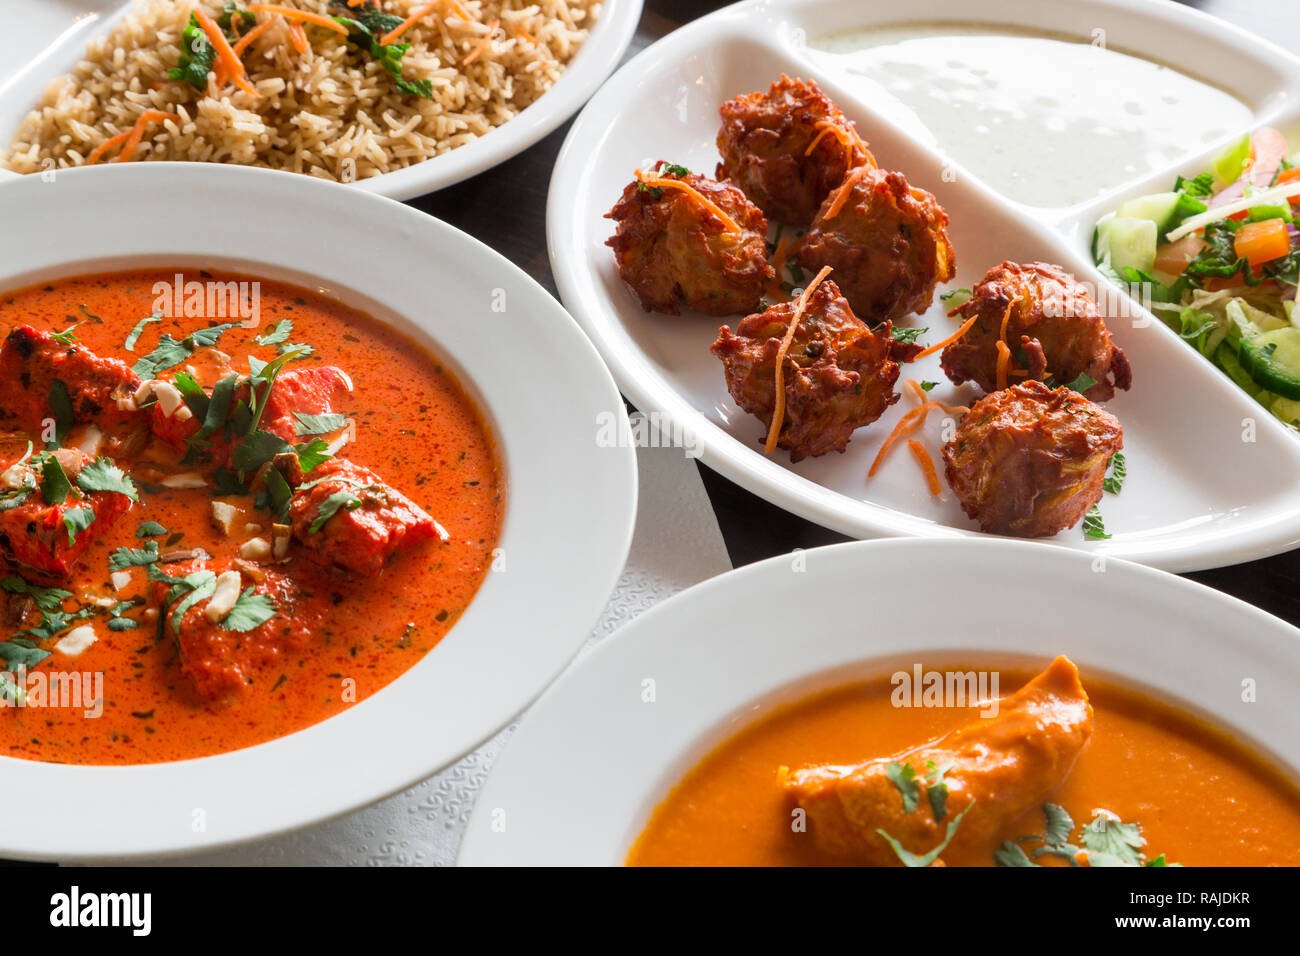 Les délices indiens, pour accoucher à la maison, le dîner avec la famille et les amis Banque D'Images